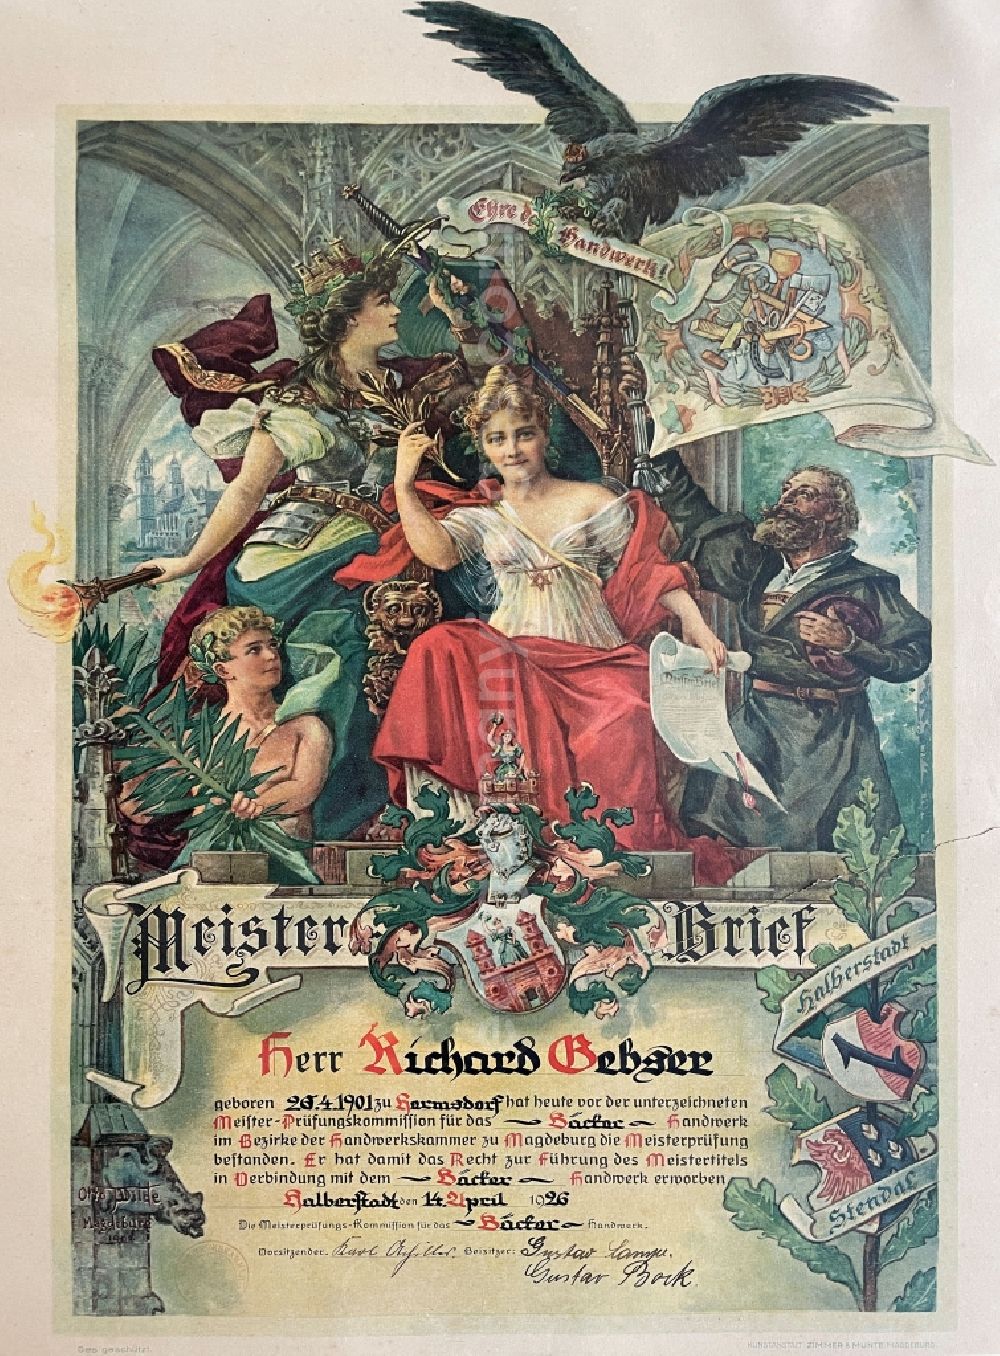 GDR image archive: Halberstadt - Reproduction Baeckerhandwerks - Meisterbrief of Richard Gebser issued in Halberstadt in the state Saxony-Anhalt in Germany